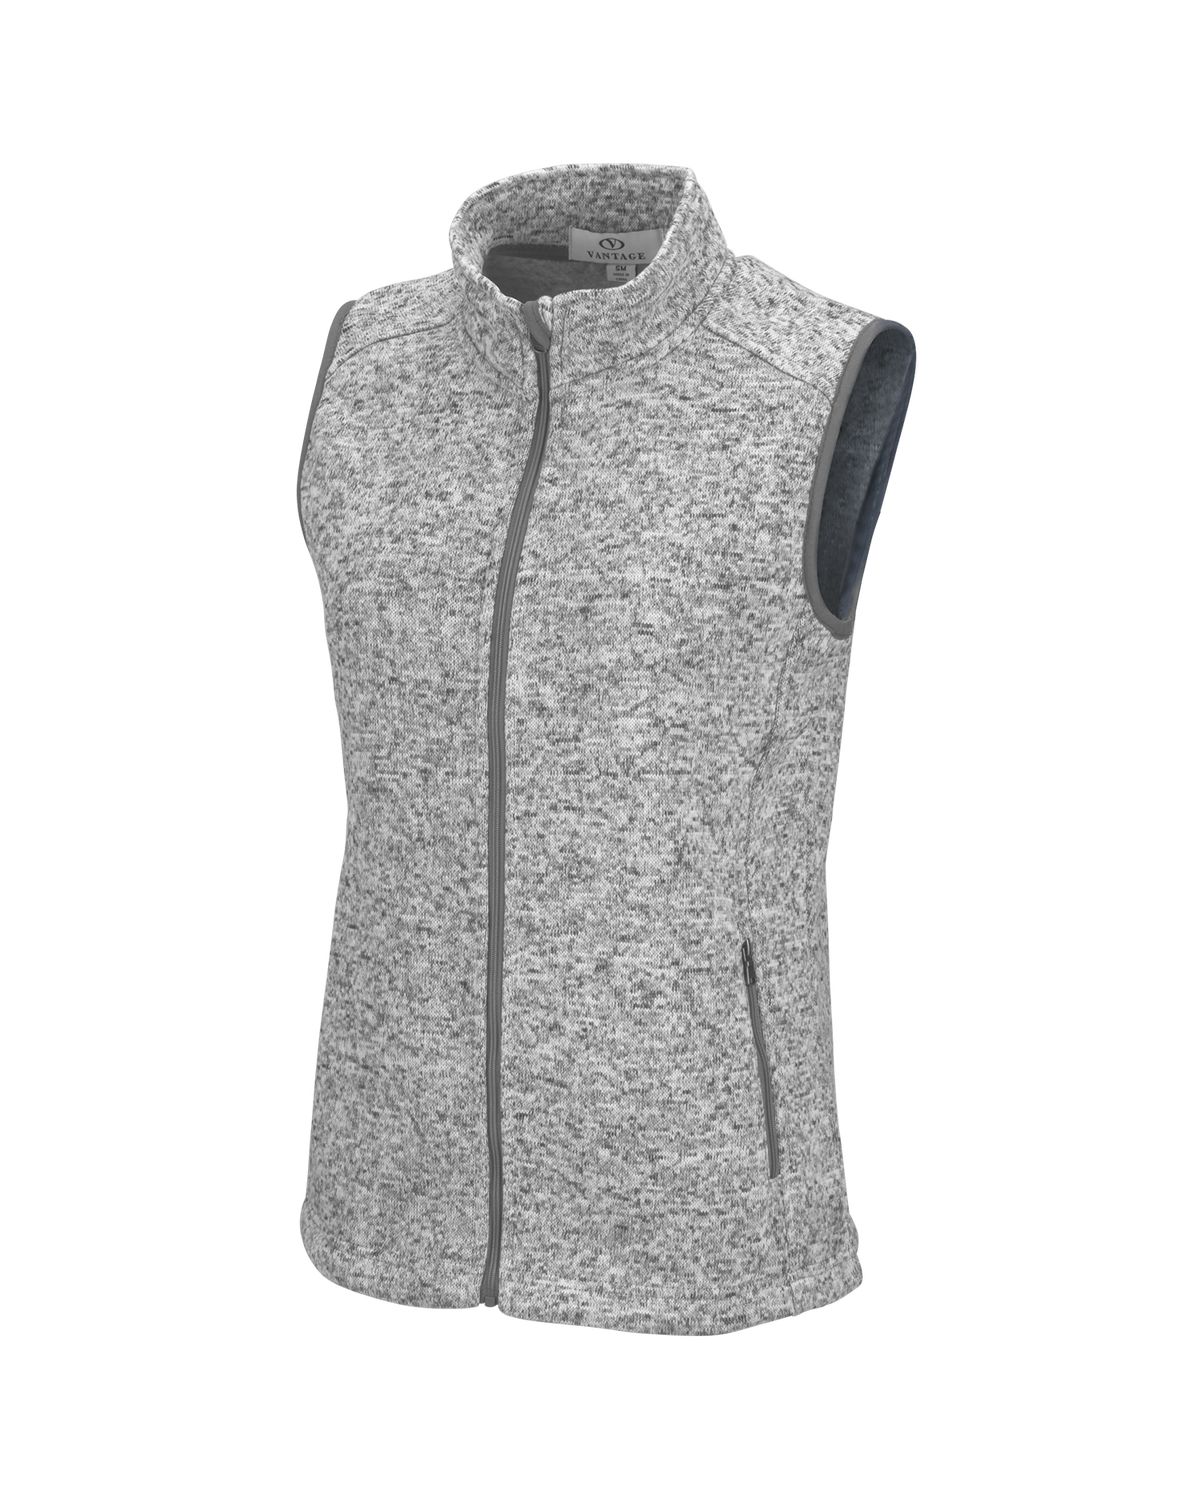 'Vantage 3308 Women’s Summit Sweater-Fleece Vest'